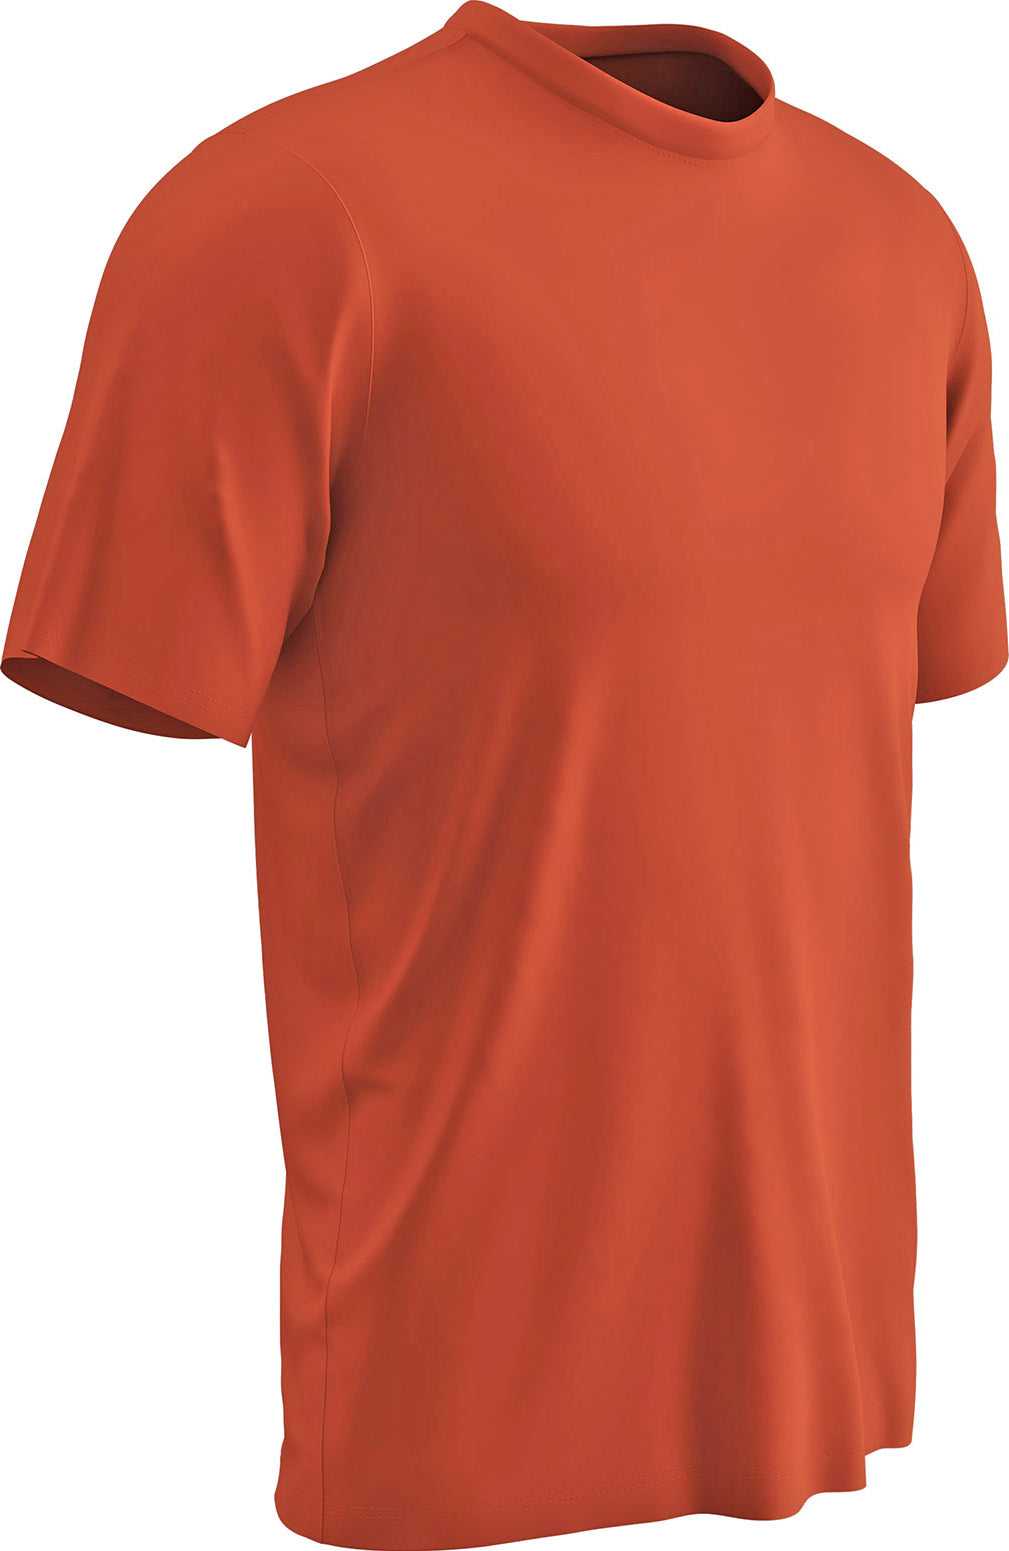 Champro BST99 Vision T-Shirt - Orange - HIT a Double